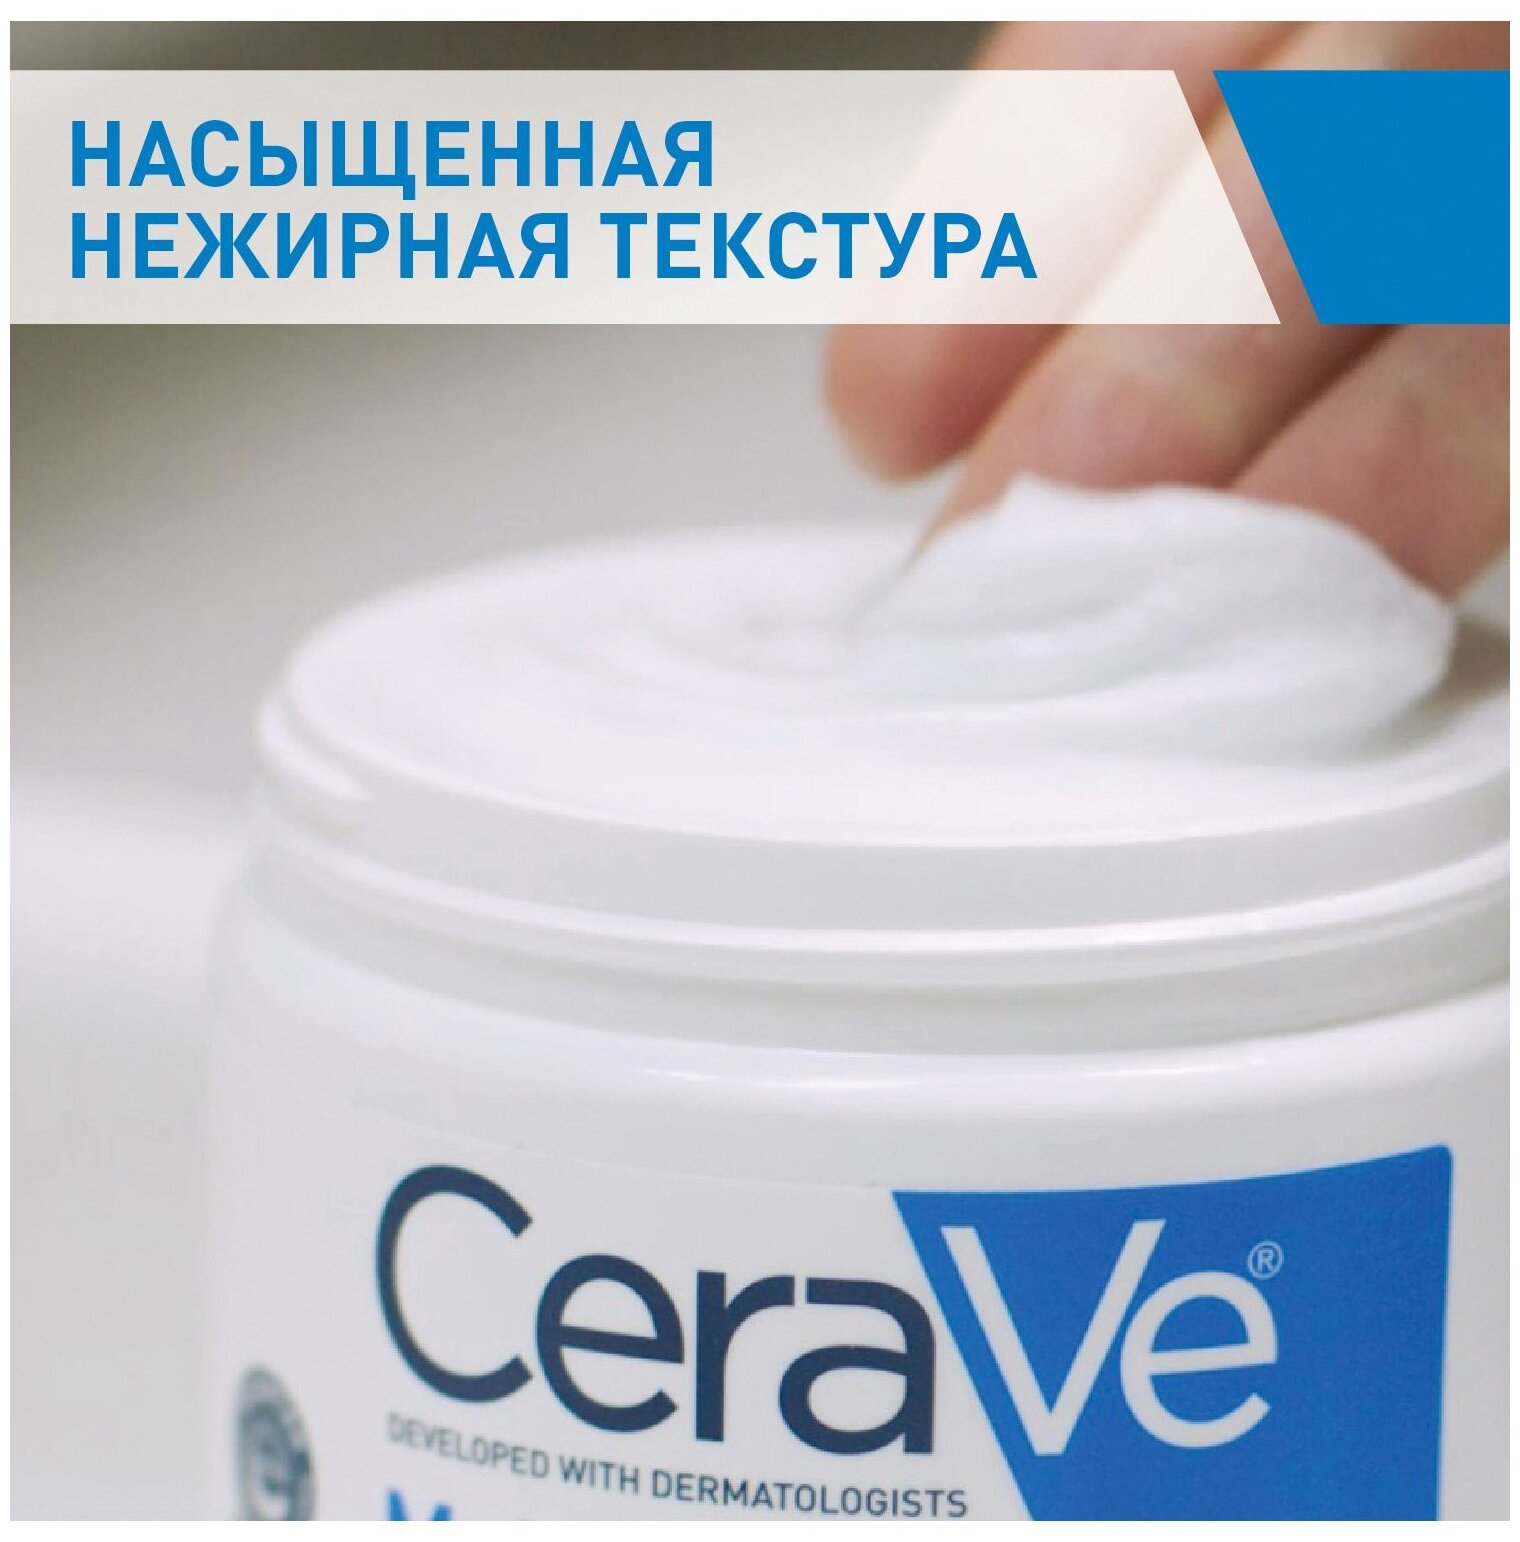 Крем CeraVe (Цераве) увлажняющий для сухой и очень сухой кожи лица 50 мл Косметик Актив Продюксьон - фото №3